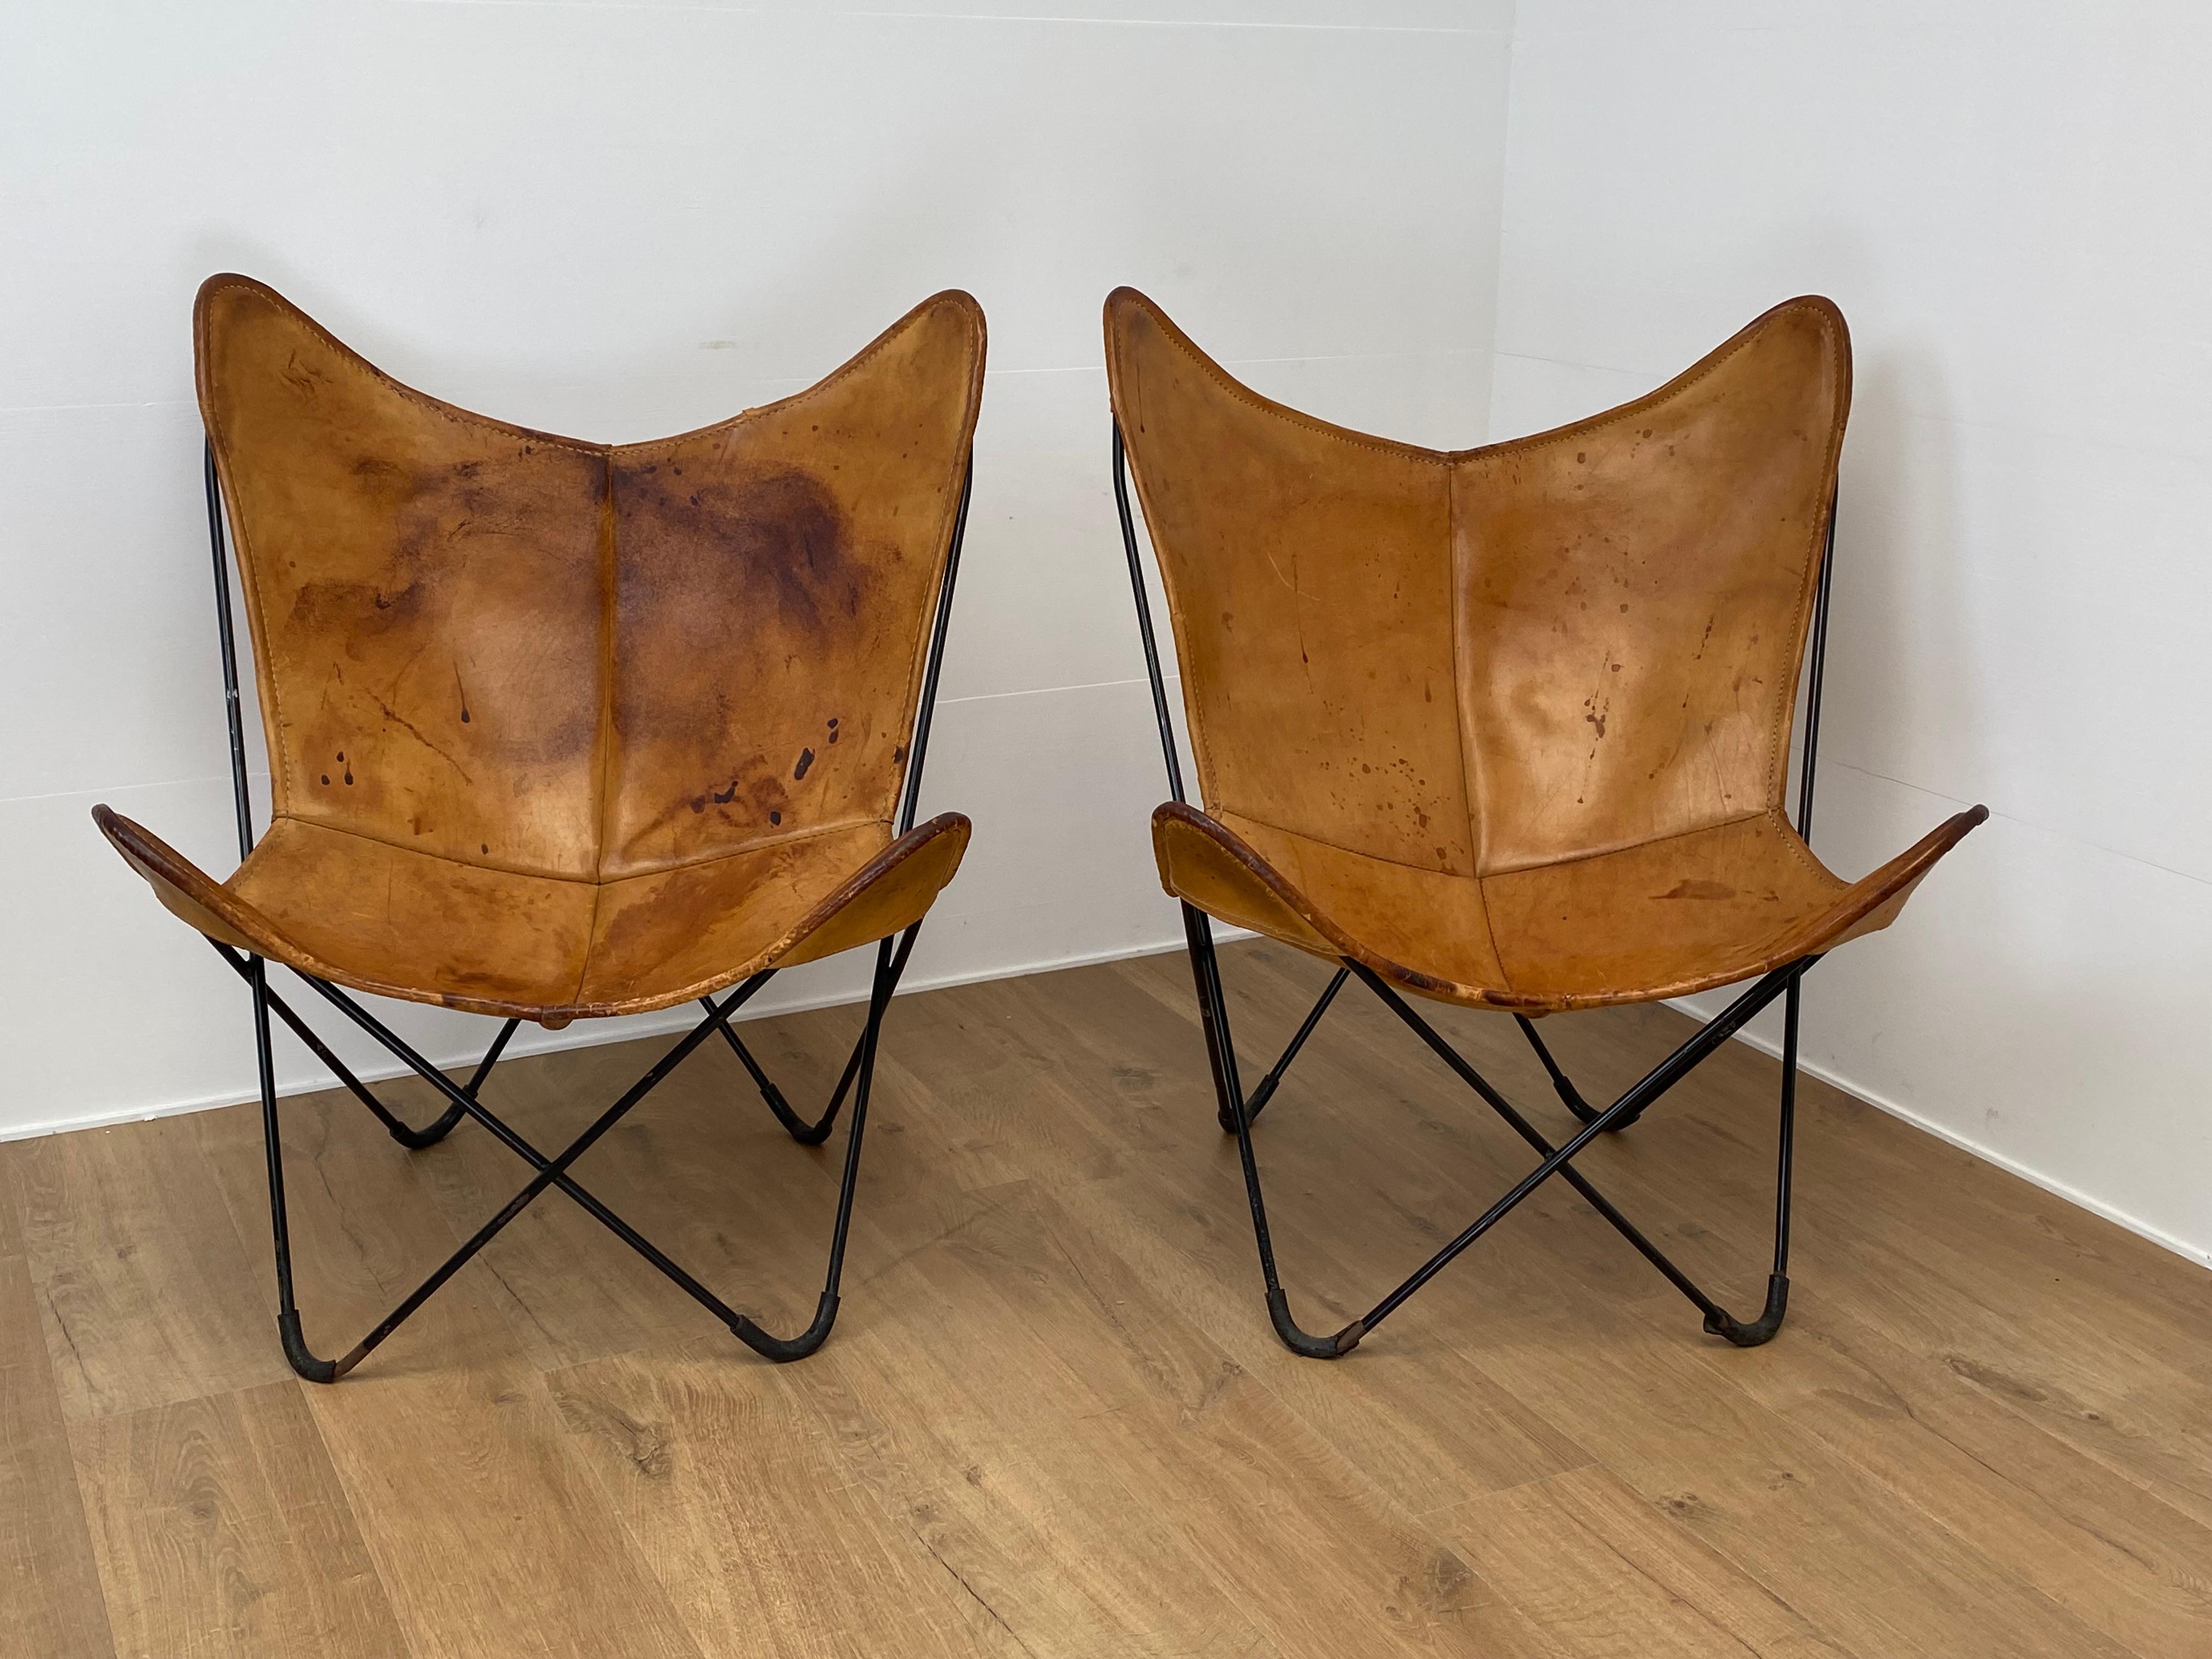 Exceptionnelle paire de chaises papillon en cuir, chaises BKF pour Knoll,
conçu par Bonet,Kurchan et Ferrari à Buenos Aires en 1938,
La paire de chaises a une belle couleur cognac et une belle patine,
les taches, les éraflures et l'usure du cuir